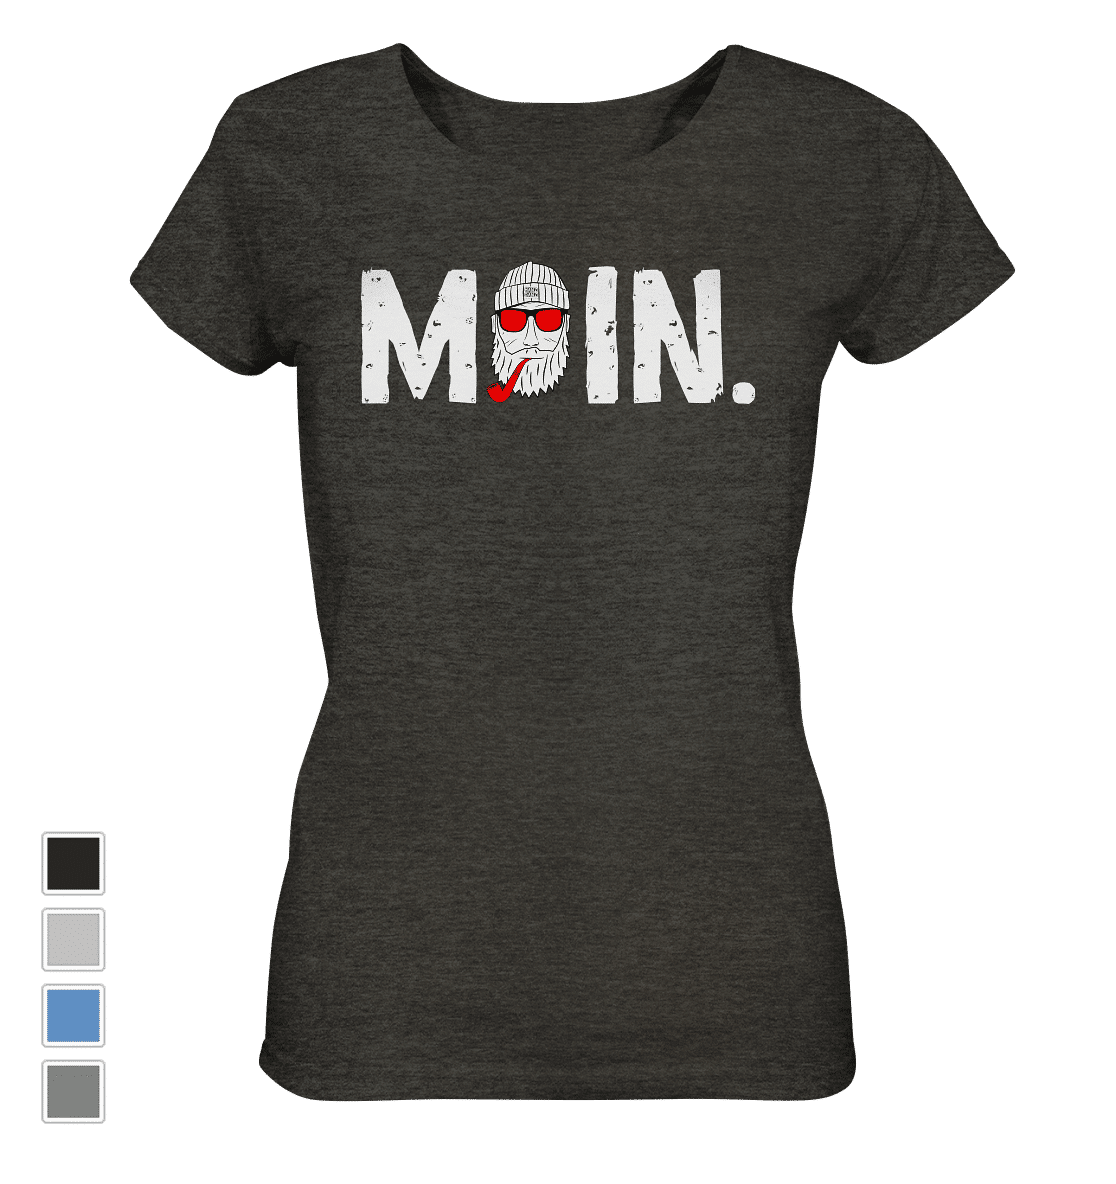 #MOIN. (rot) | Frauen Bio T-Shirt (meliert) - Produktbild